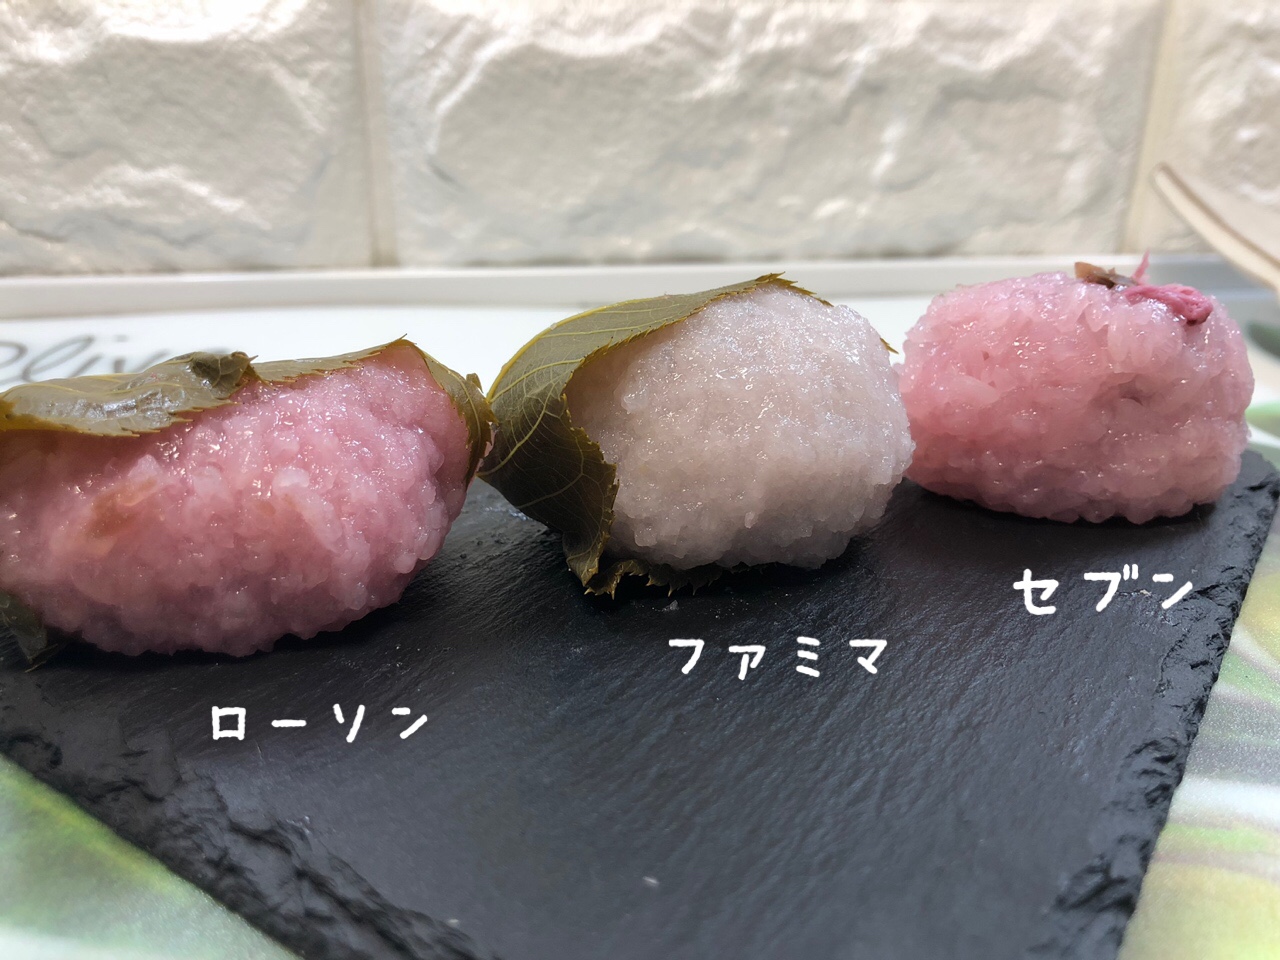 2019年春!コンビニ3社の「桜餅」を食べ比べてみました! | おっちょこさんぽ